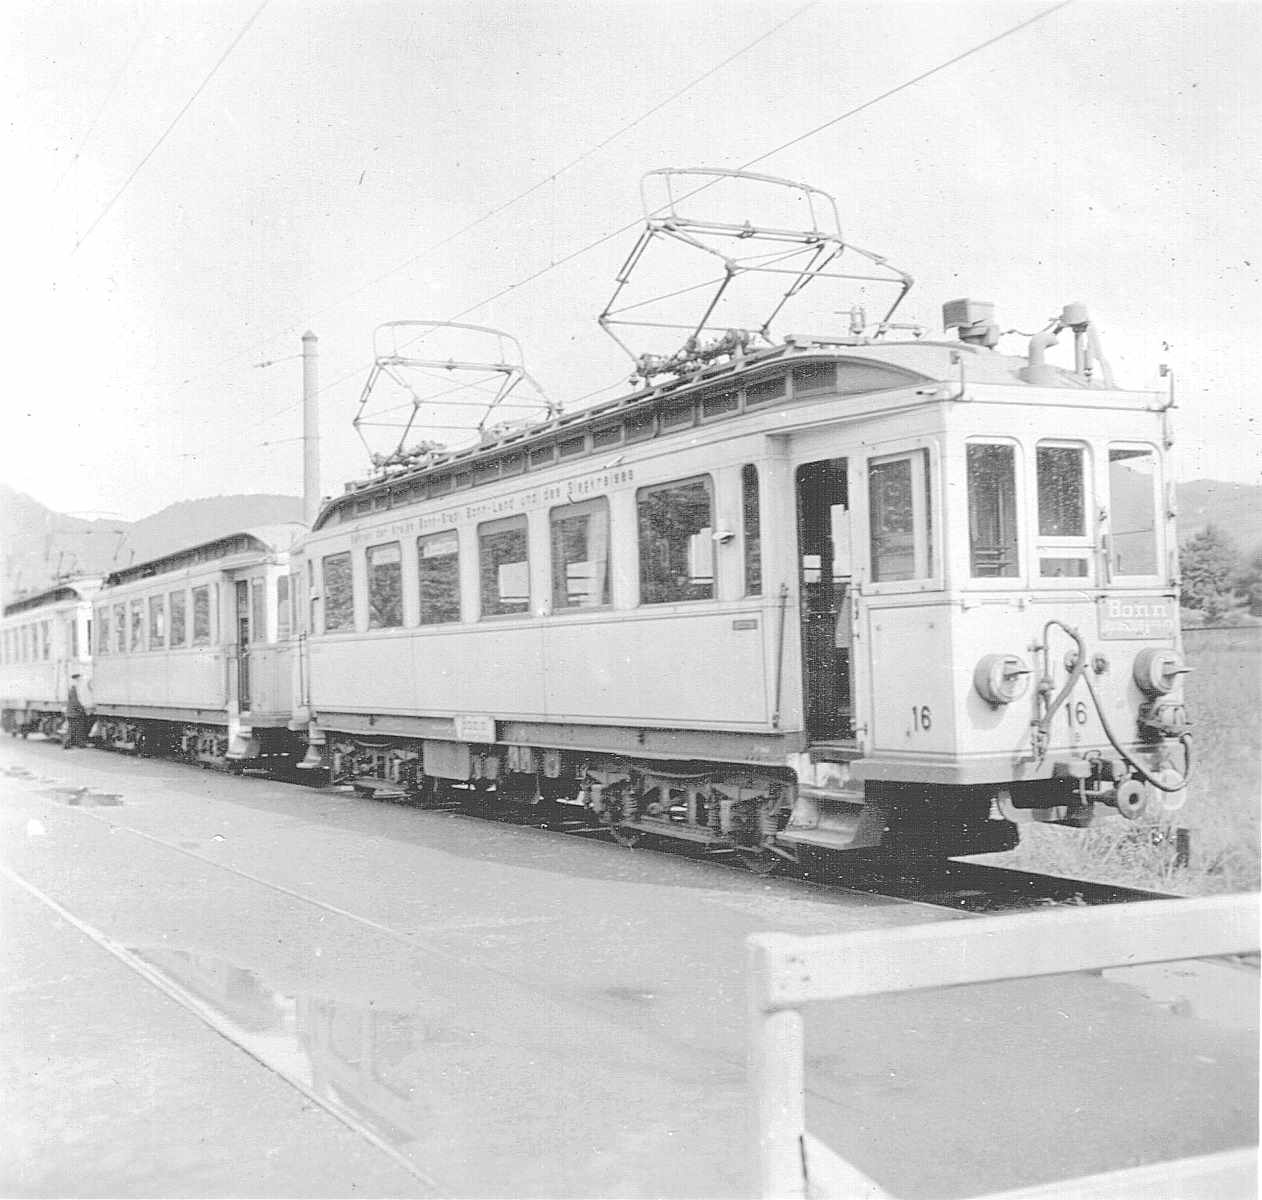 WuppertalerStrassenbahn/Stens_(oder_aehnlich)_Linden_D689_Dahlhausen_Tram_Bonn_Wagen16_mit_Scheinwerfer-Verdunkelung_um_1940